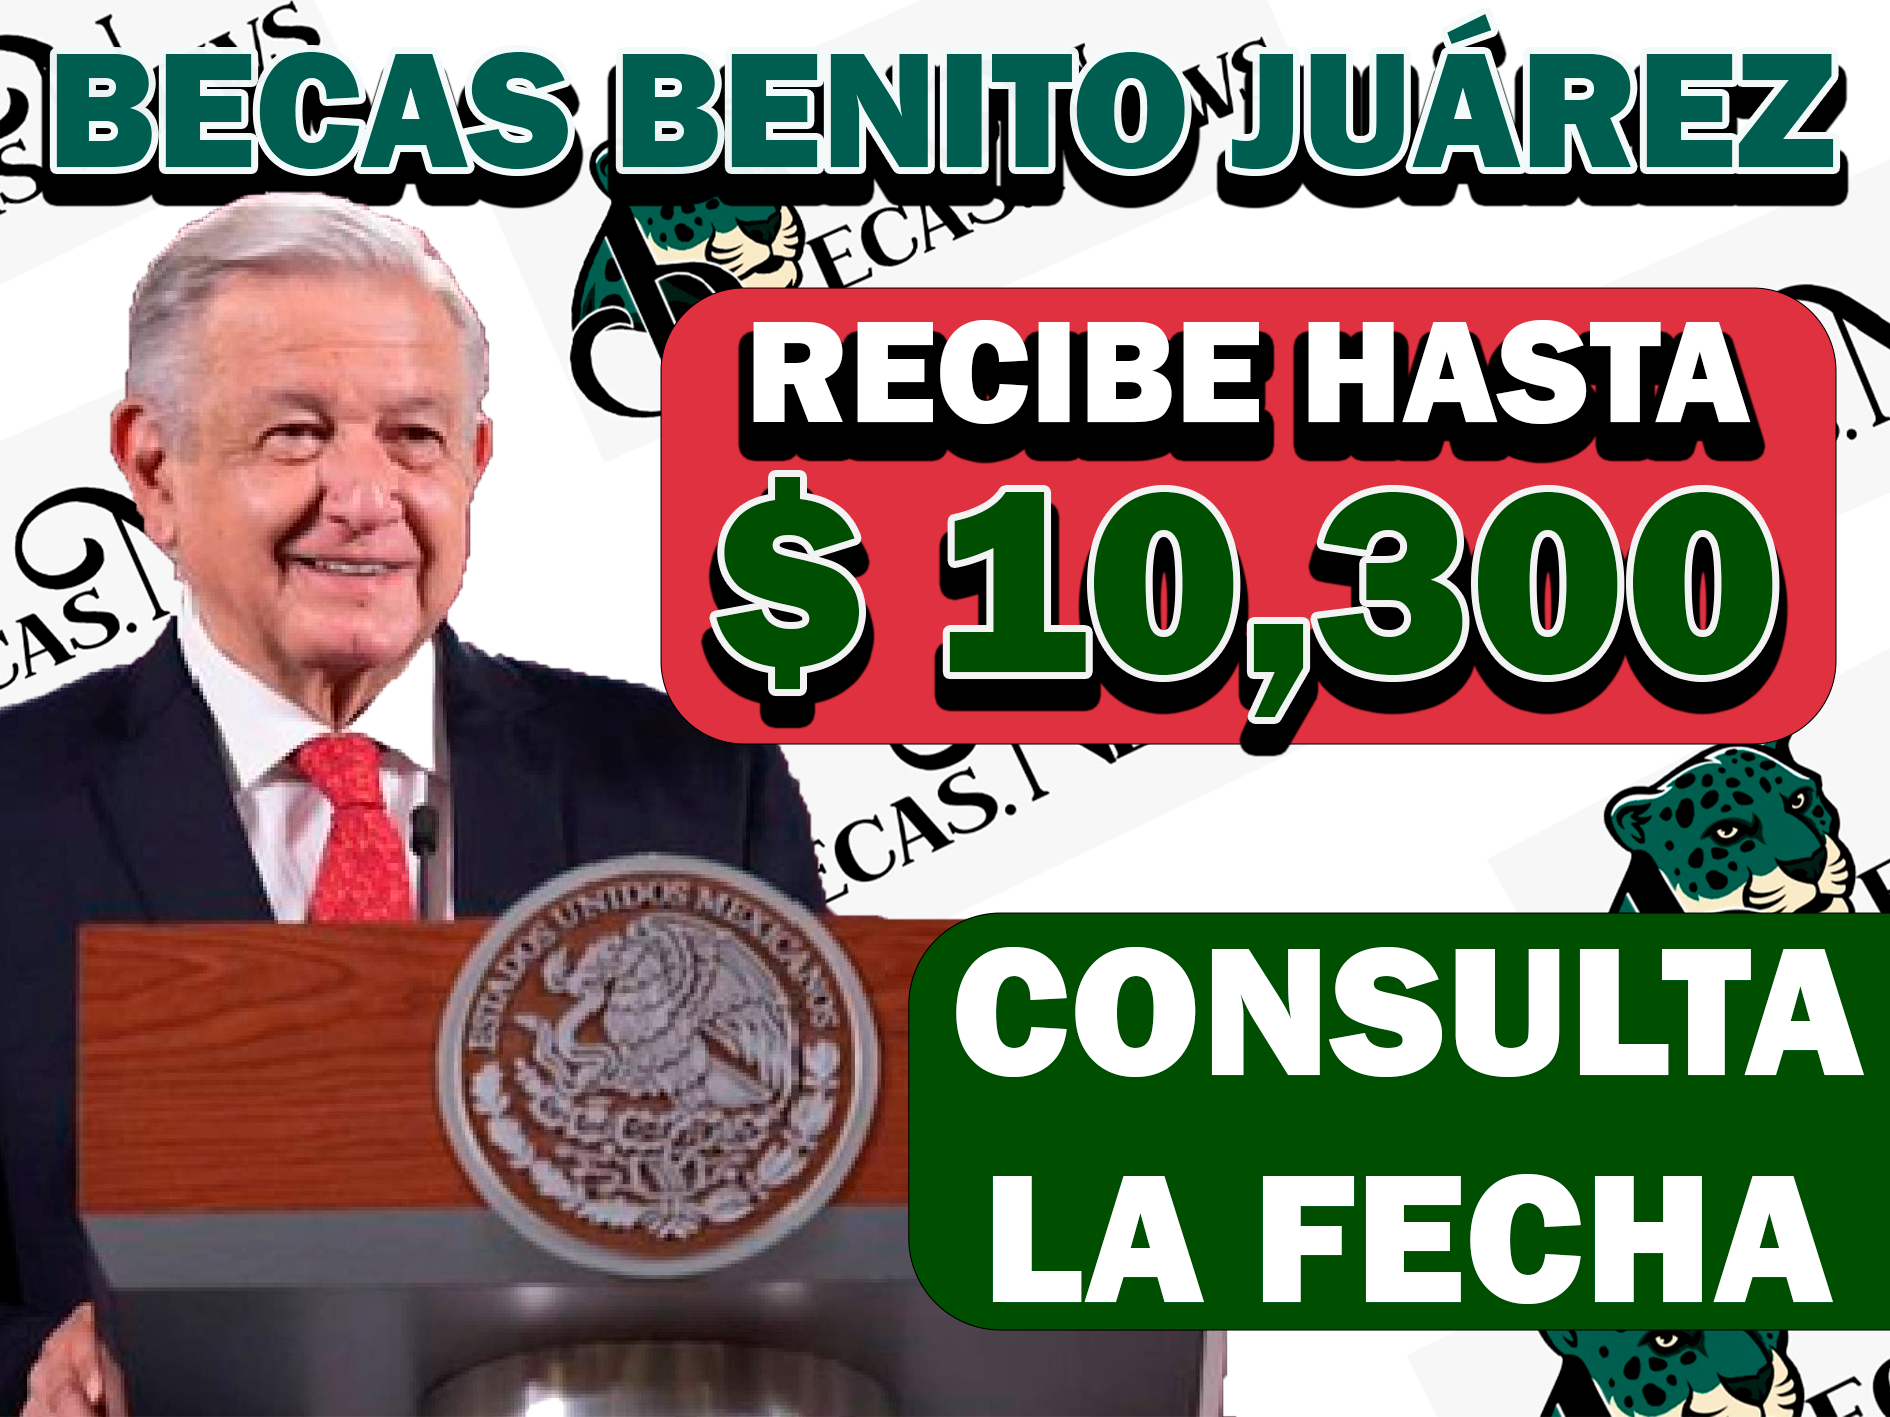 ¡BUENAS NOTICIAS! ESTOS BENEFICIARIOS RECIBIRÁN UN PAGO DE $ 10,300 PESOS| BECAS BENITO JUÁREZ